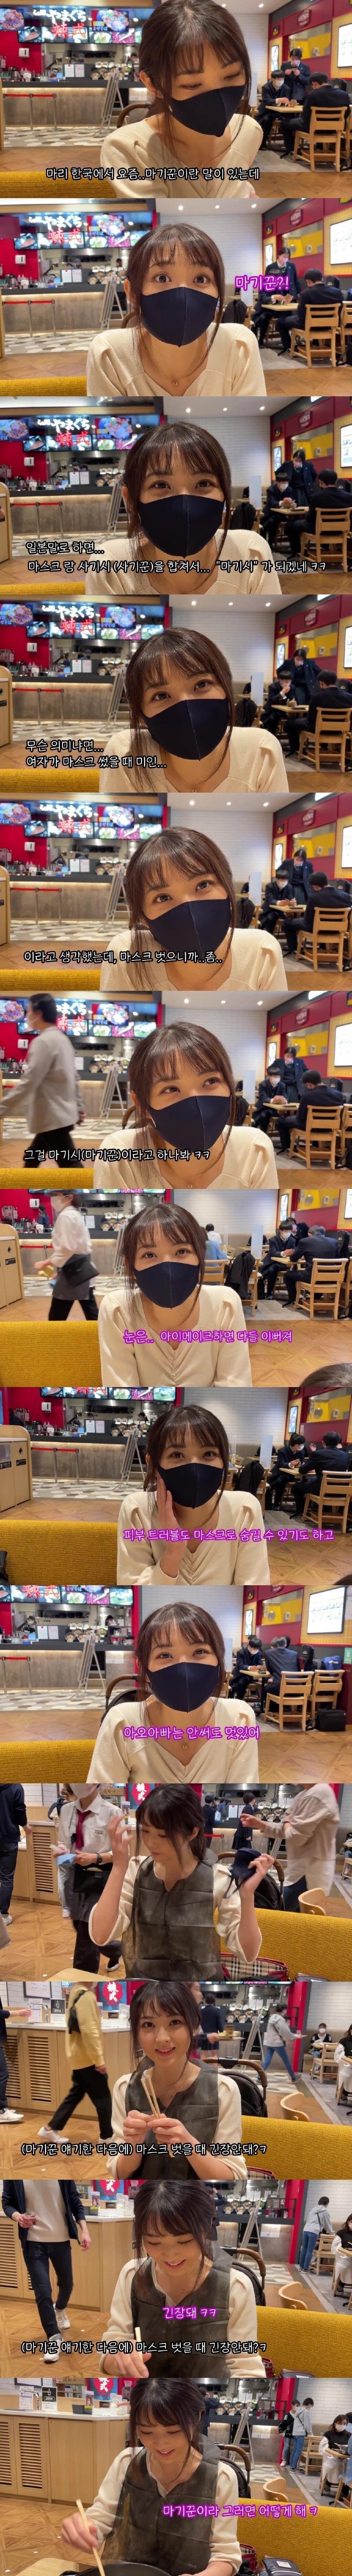 마스크 벗을 때 긴장된다는 일본 아내